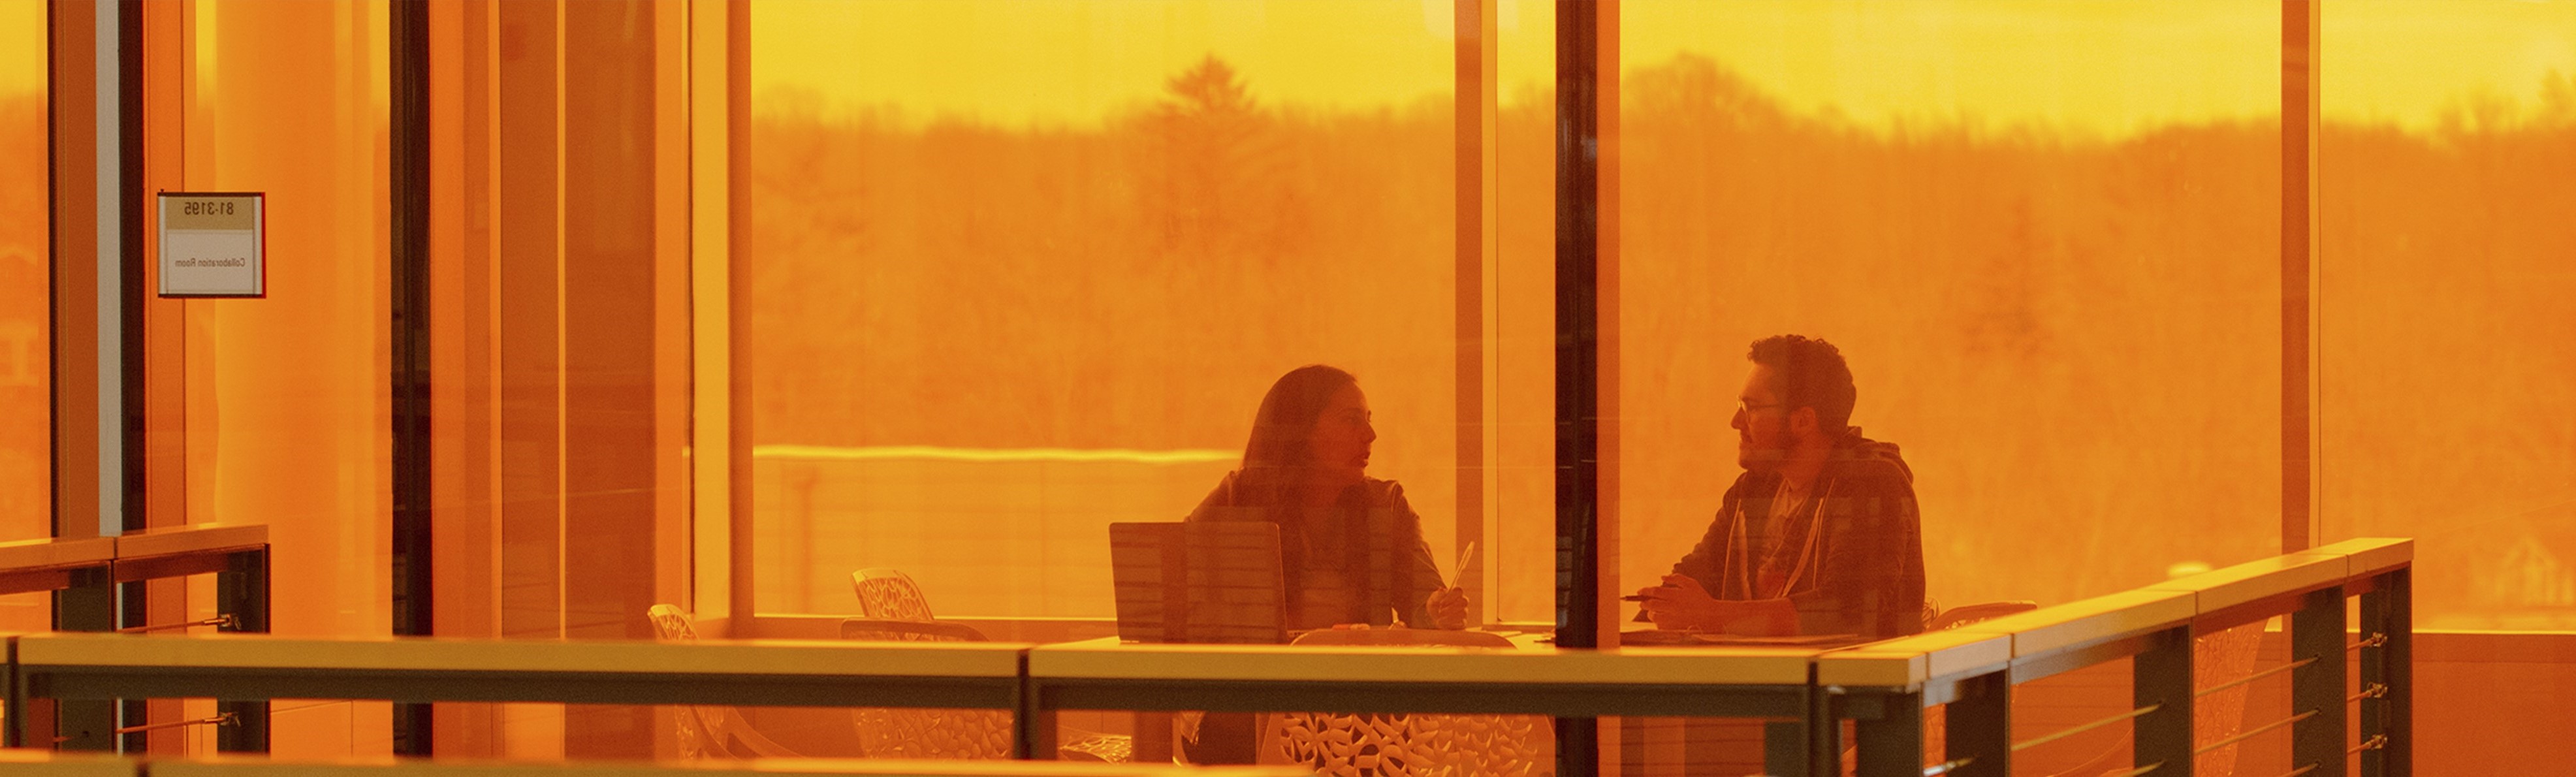 two people meeting behind orange glass